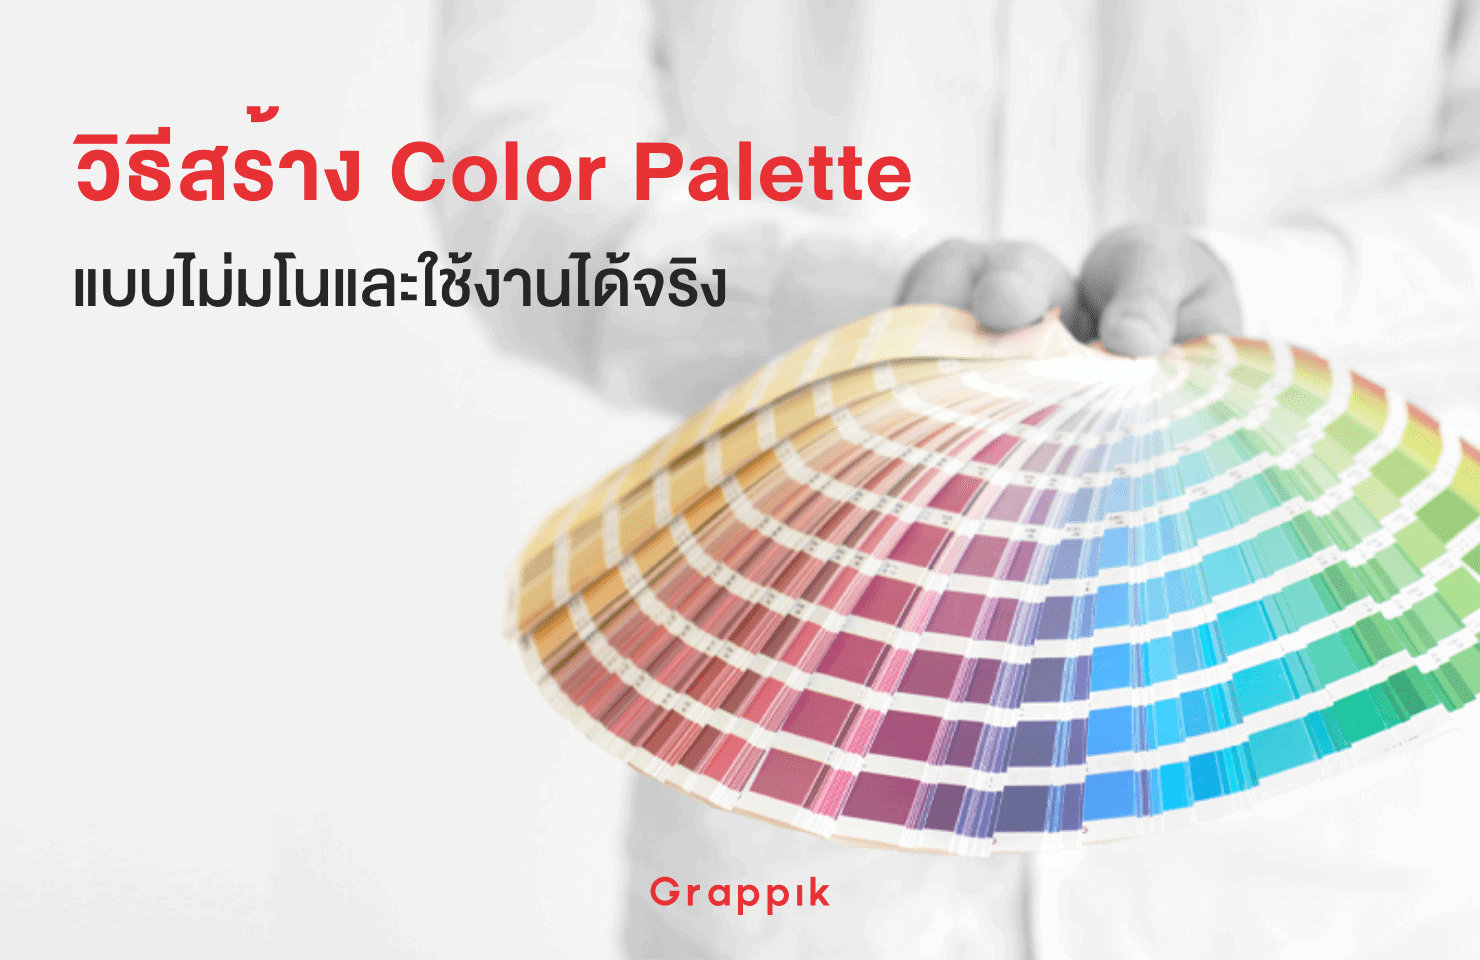 วิธีการสร้าง ชุดสี Color Palette แบบไม่มโนและใช้ในงานออกแบบได้จริง